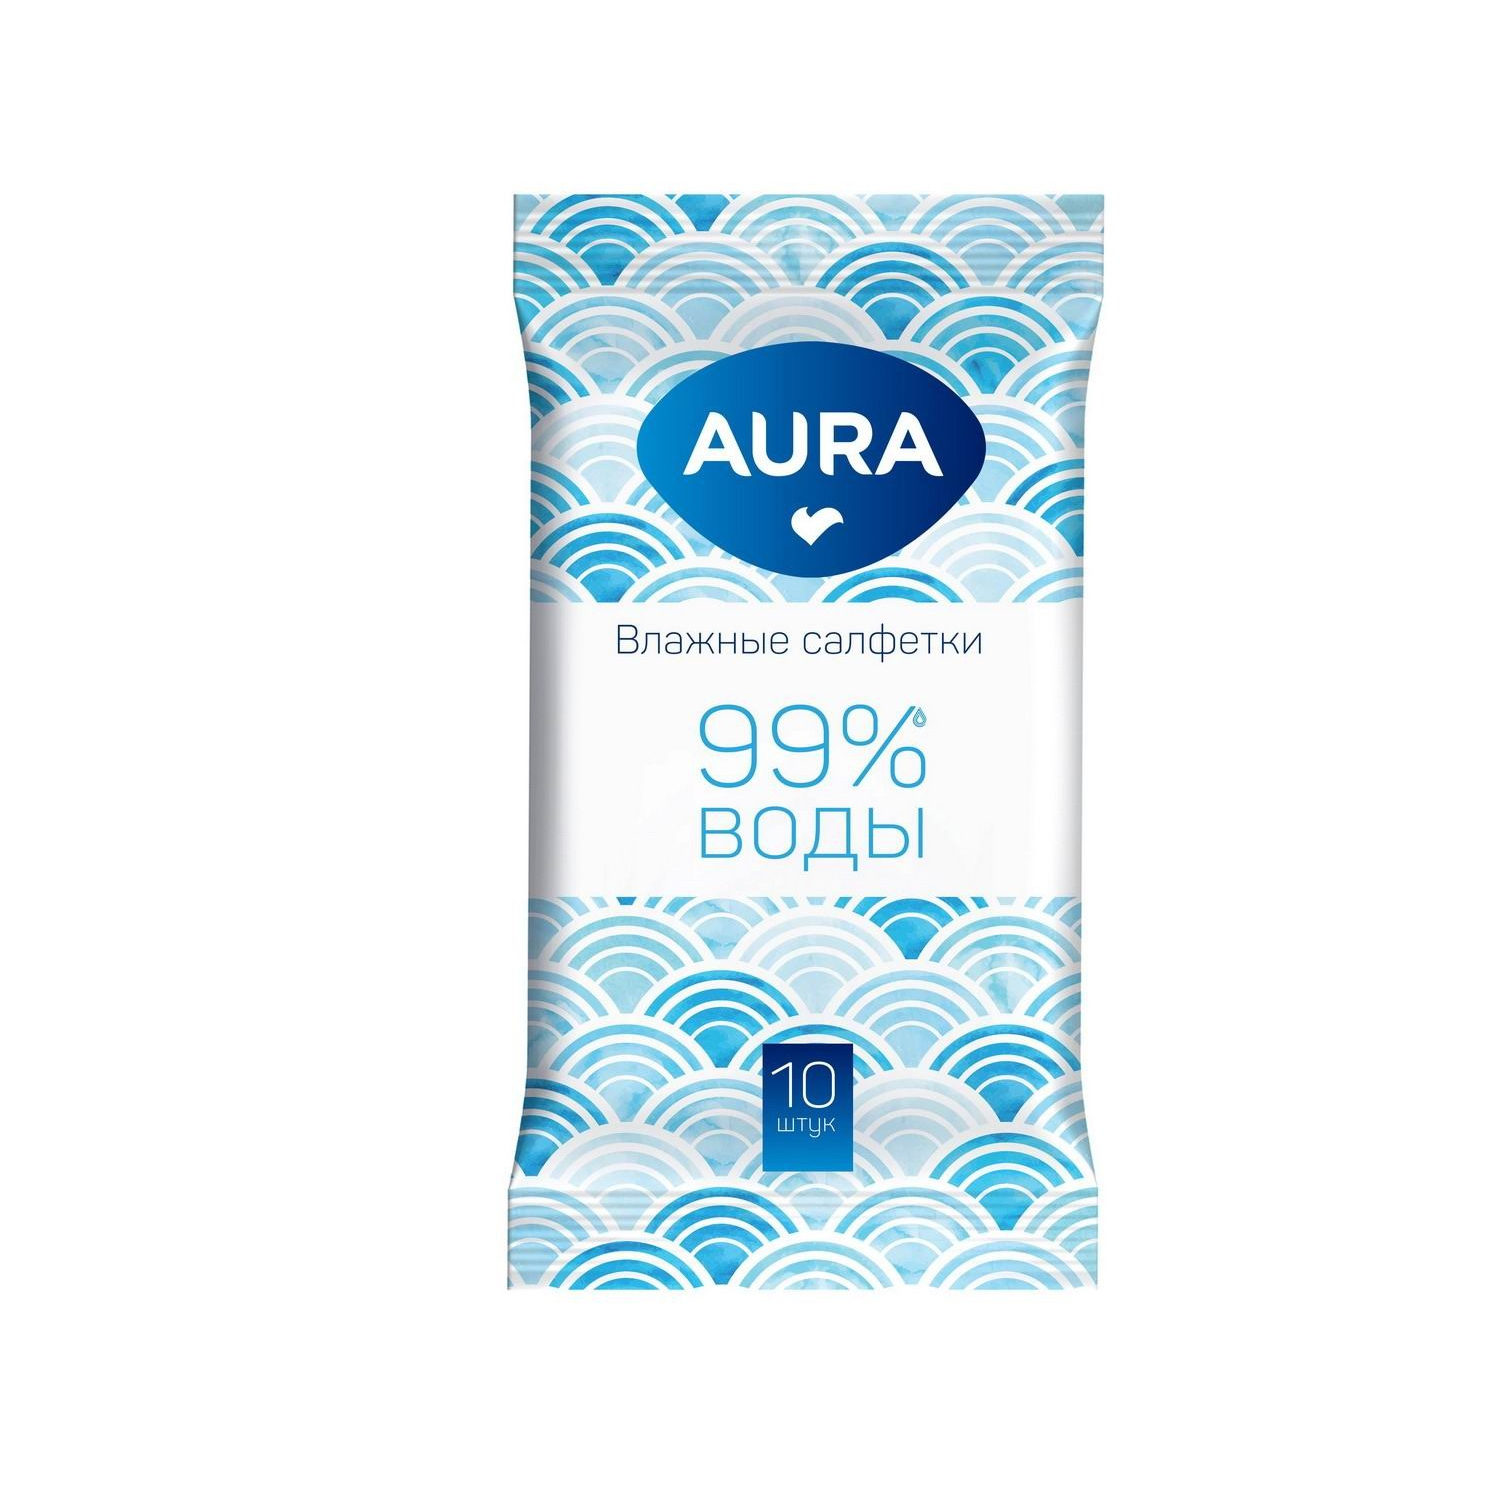 Салфетки влажные AURA освежающие 10 шт влажные салфетки для рук от сильных загрязнений airline